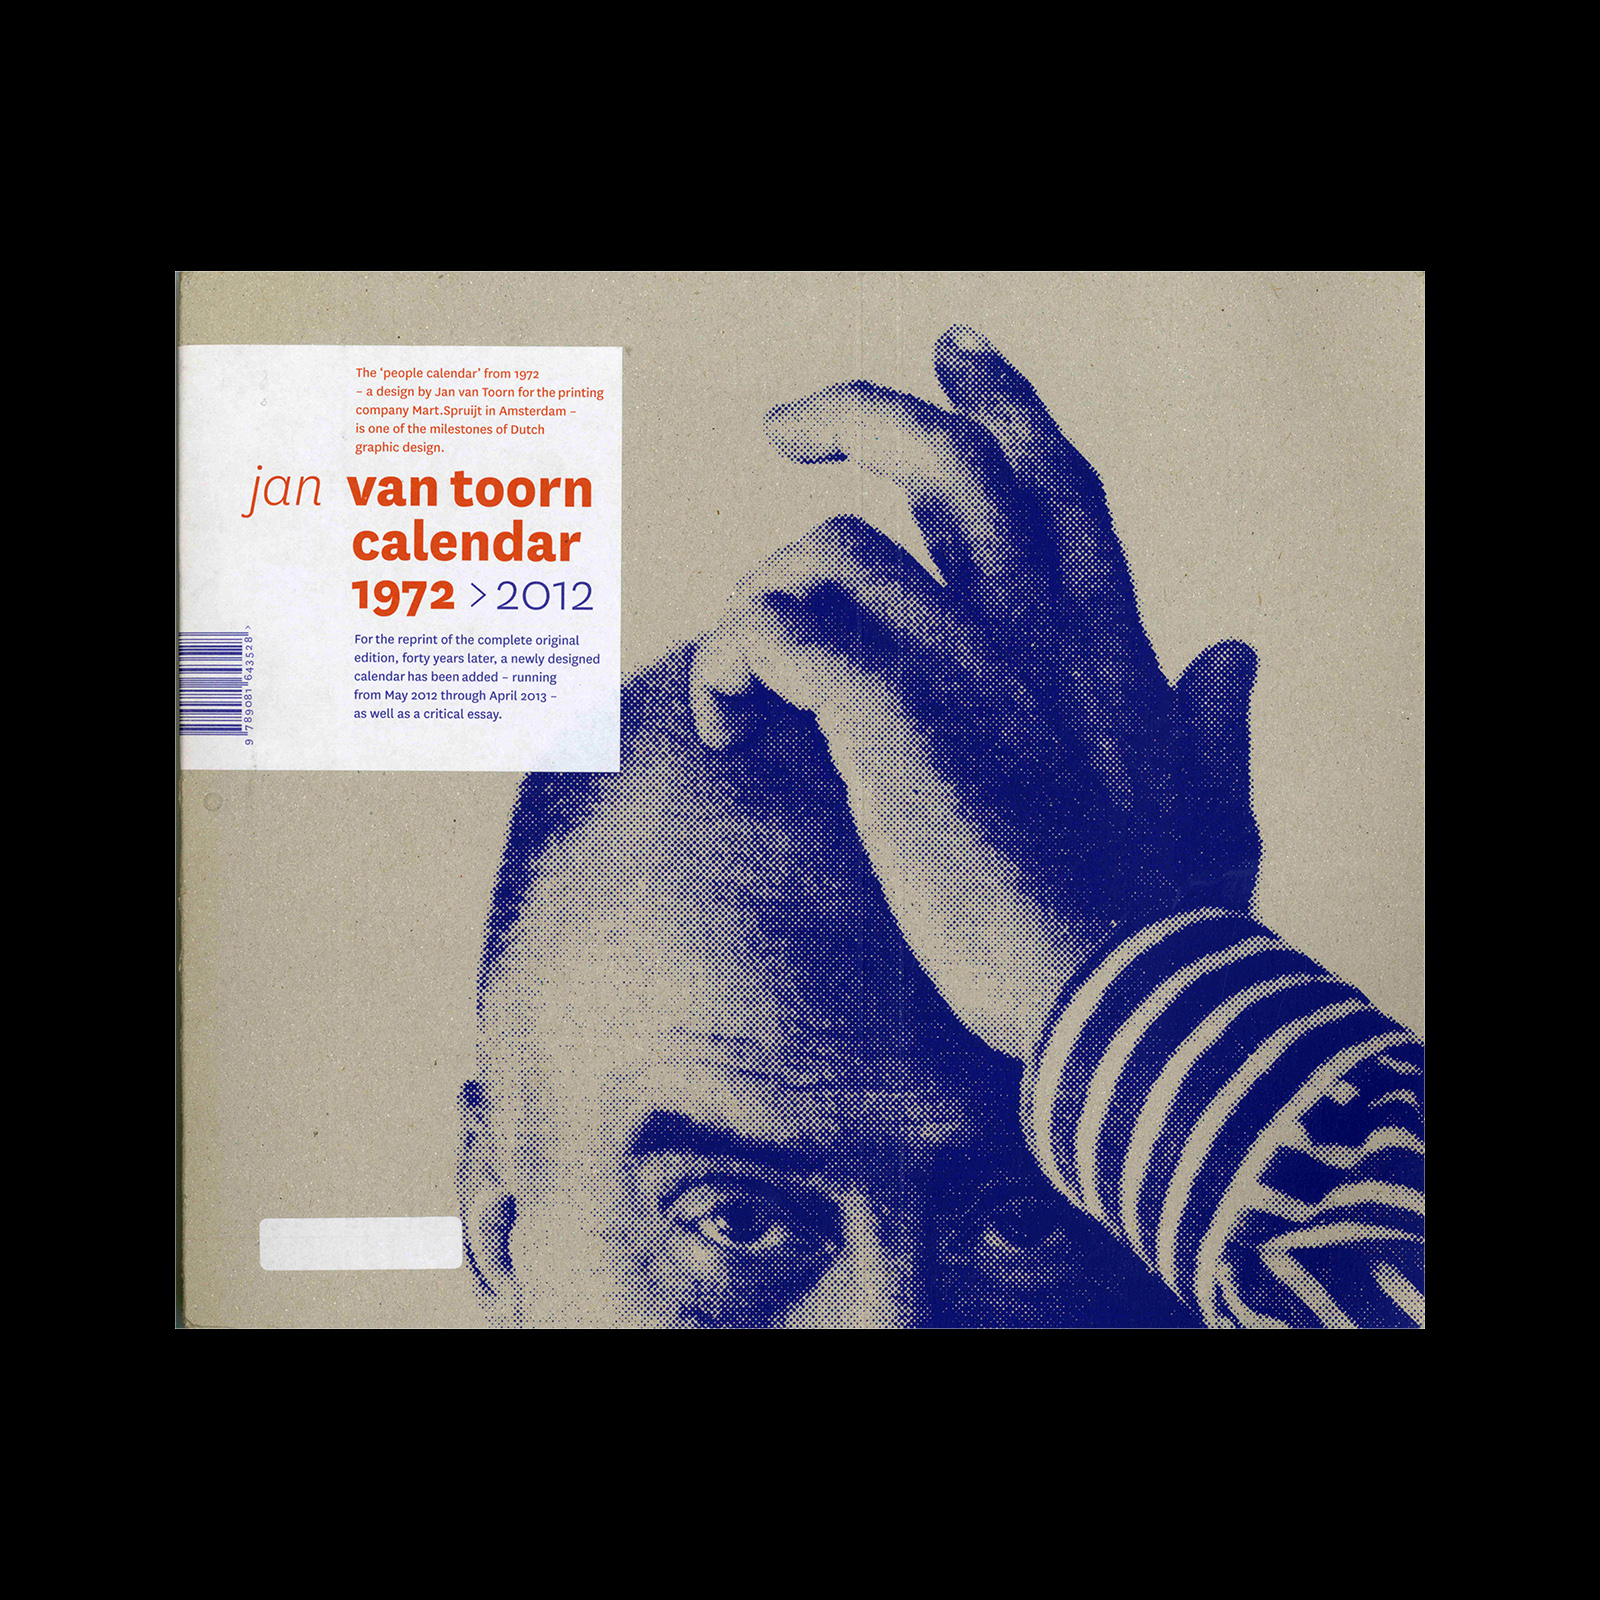 Jan van Toorn Calendar 1972 > 2012, 2012